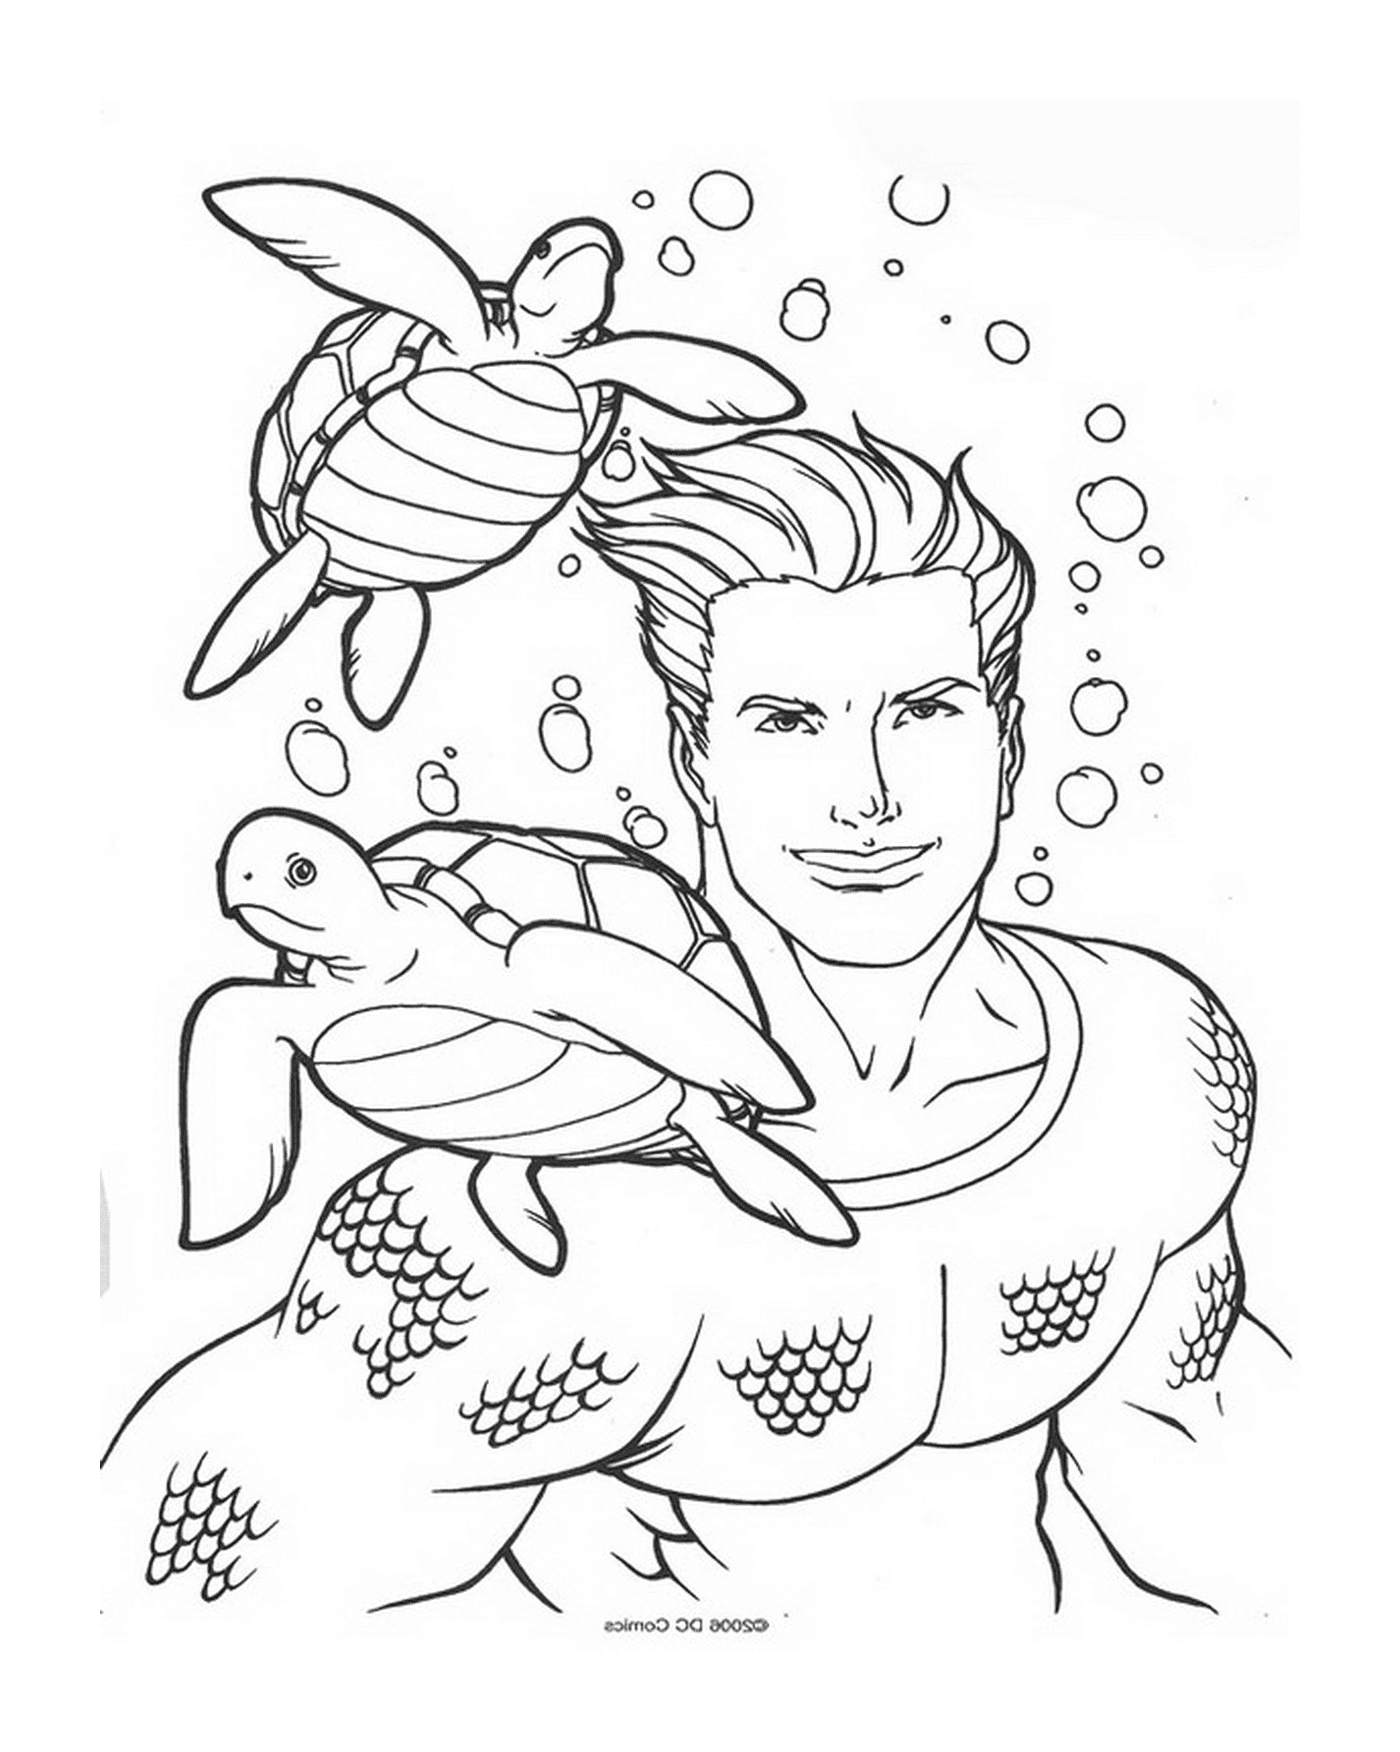   Un homme et une tortue nageant dans l'eau 